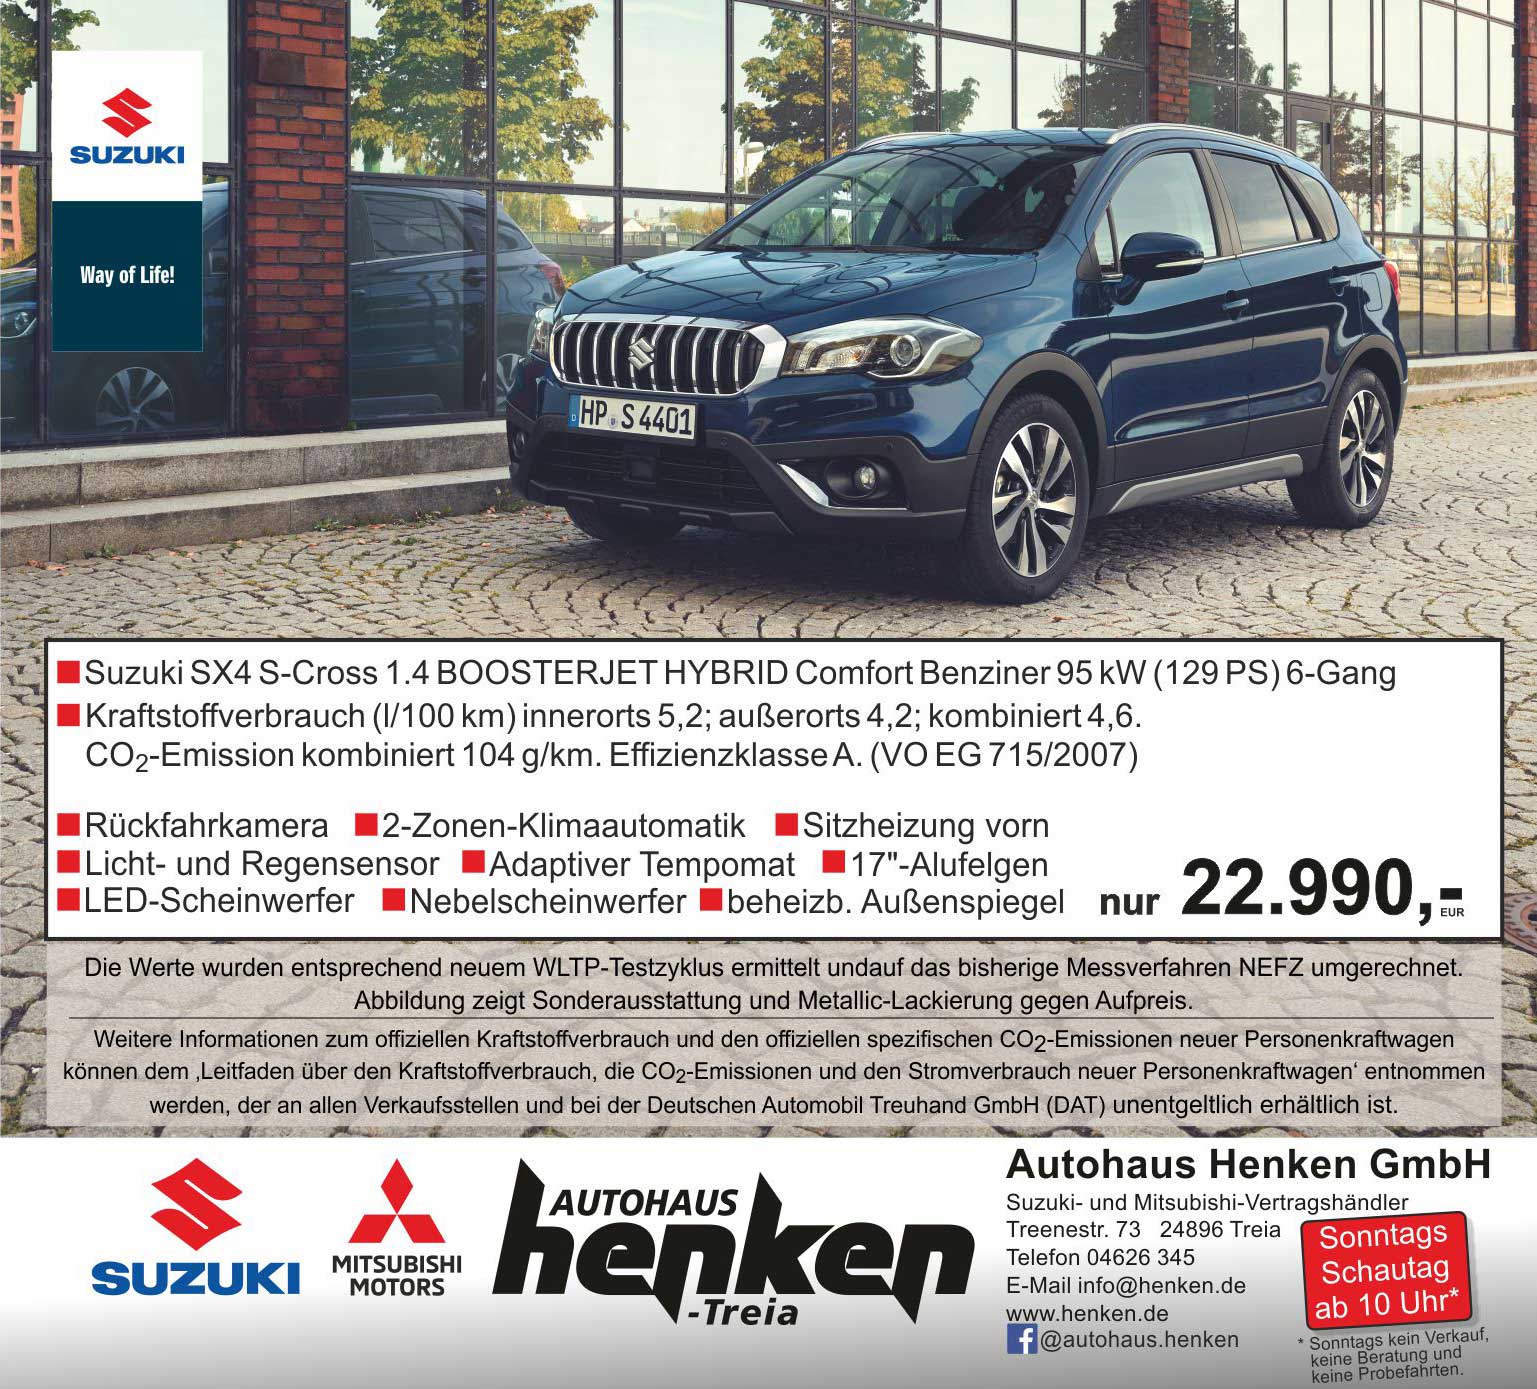 Autohaus Henken GmbH - Suzuki und Mitsubishi Vertragshändler in Treia